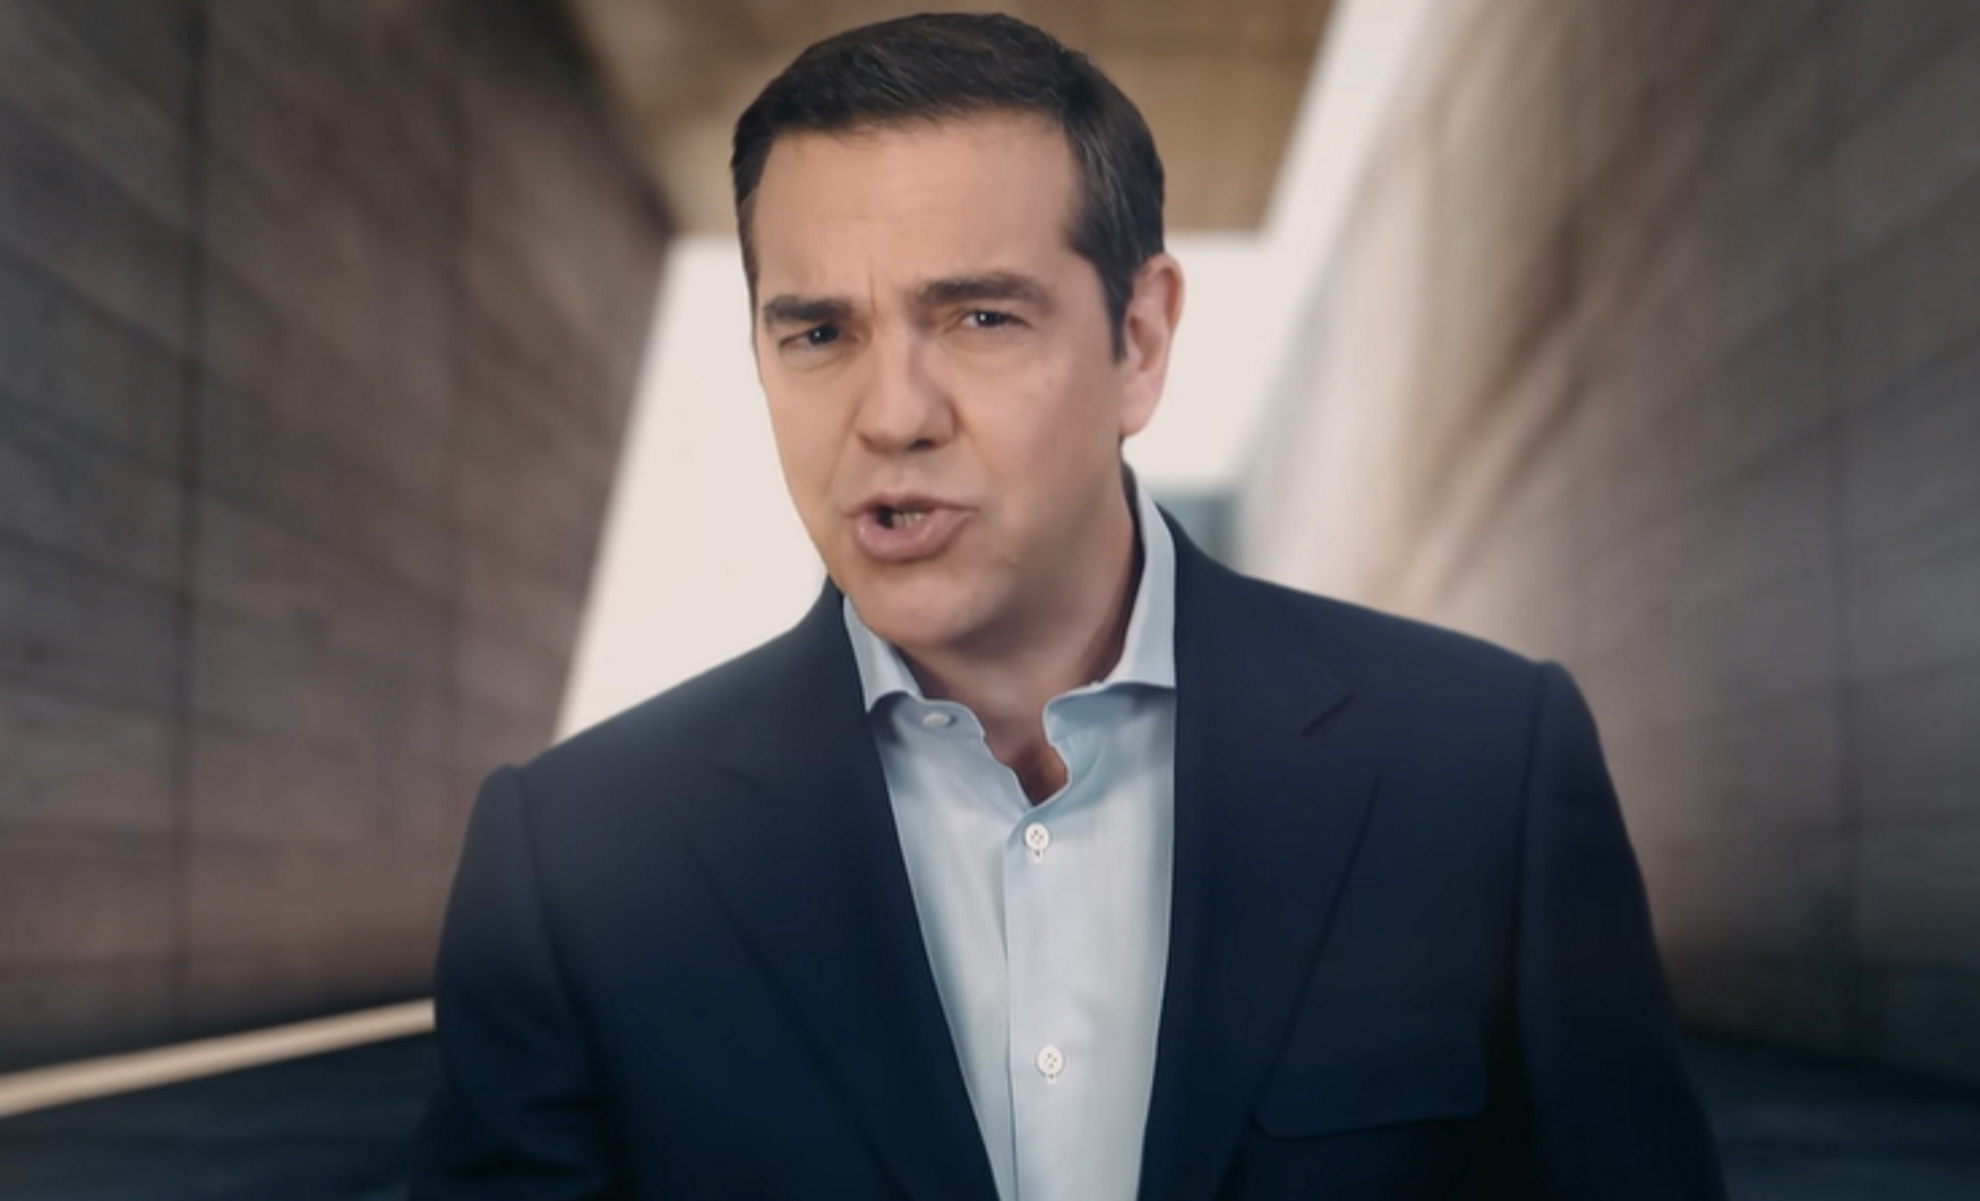 Εκλογές ΣΥΡΙΖΑ: Σποτ με πρωταγωνιστή Τσίπρα και σύνθημα για την ακρίβεια